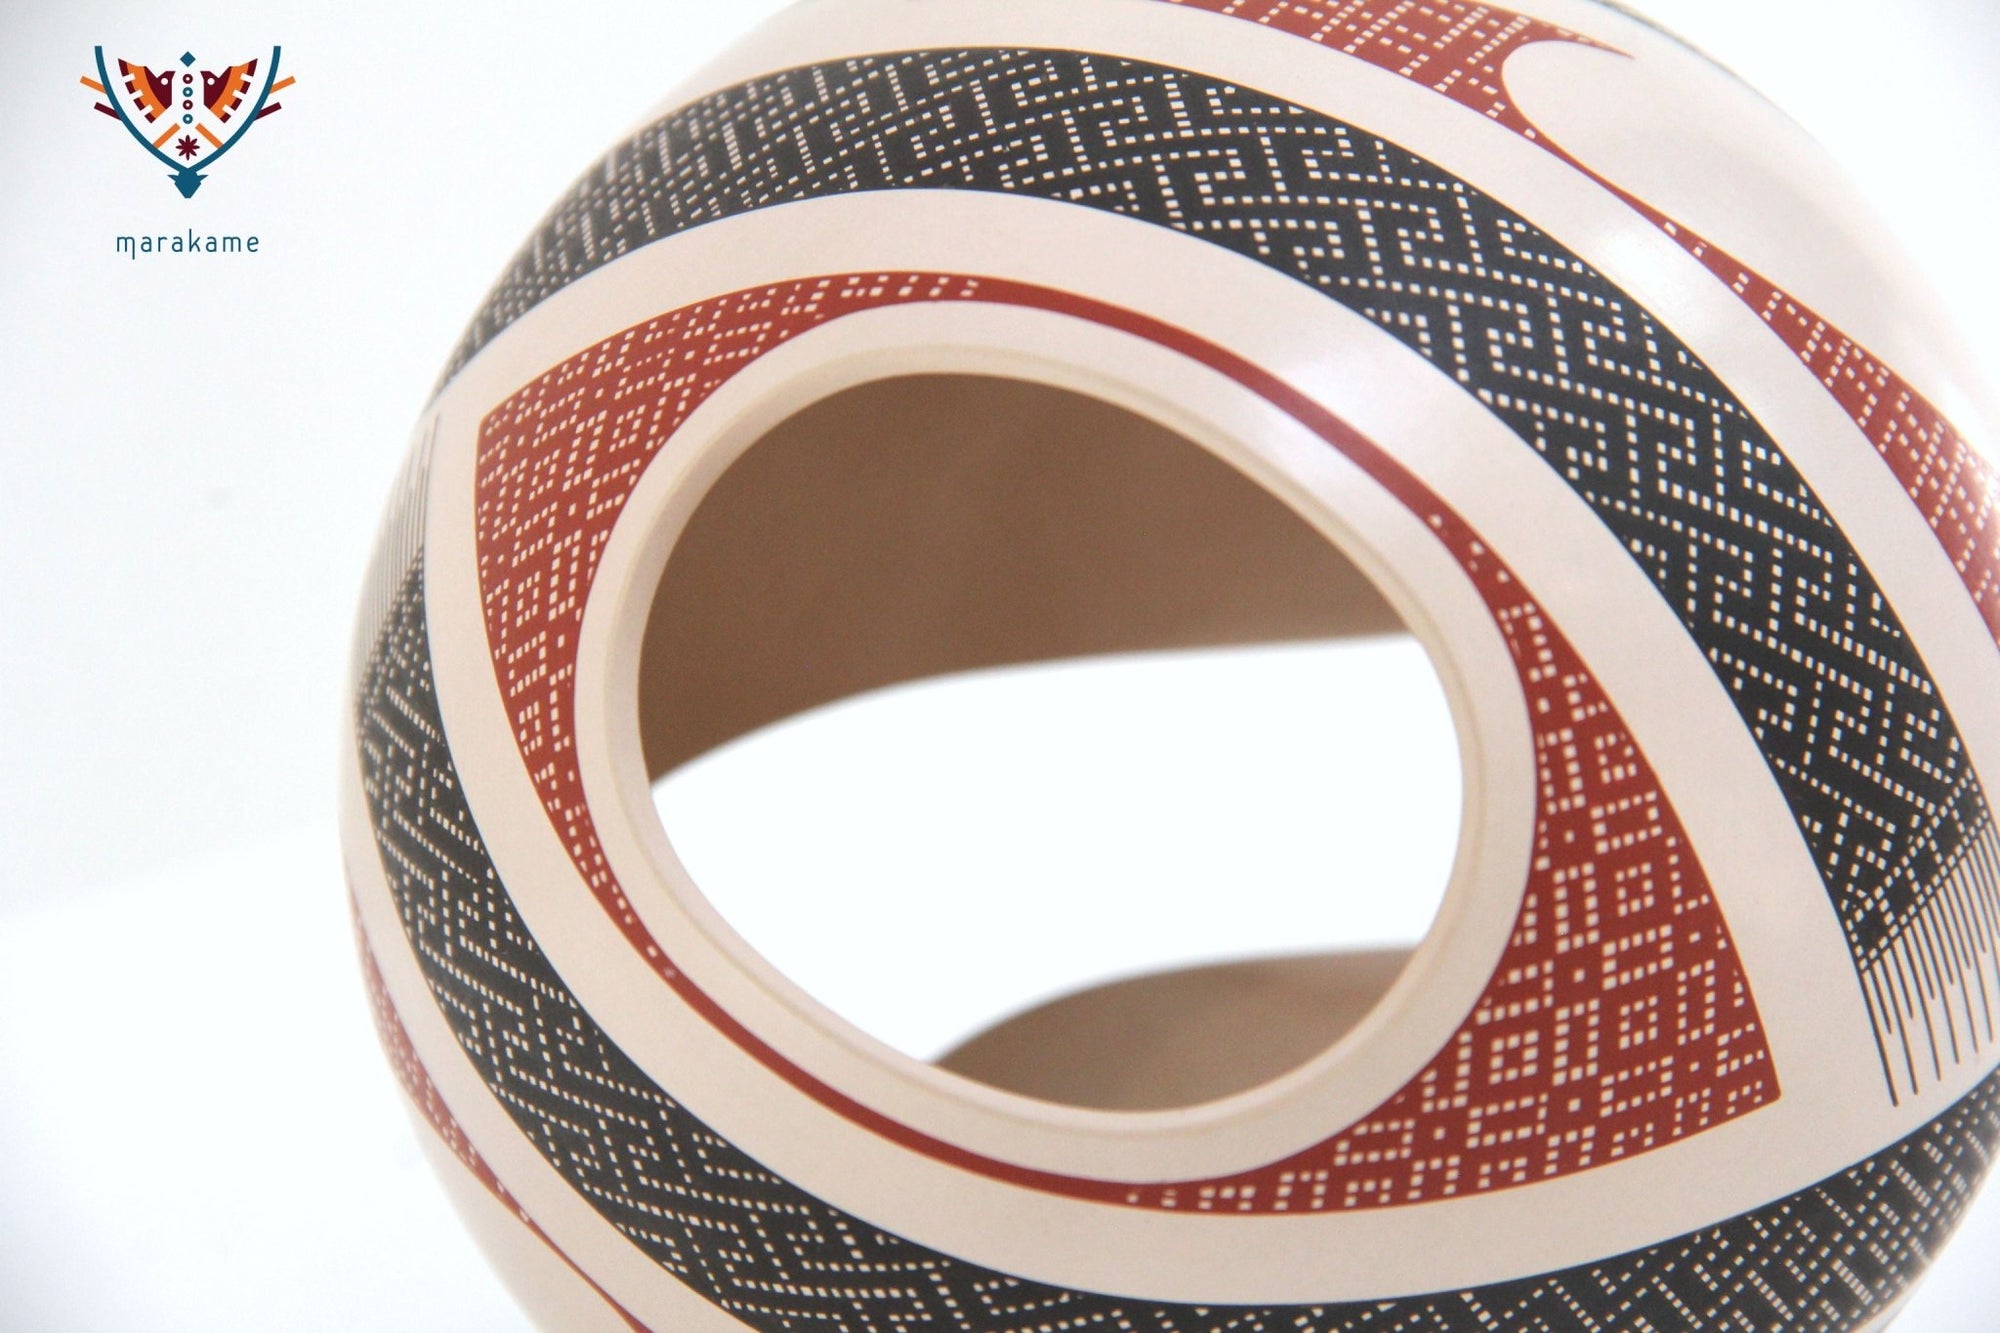 Mata Ortiz Keramik – No End – Huichol Art – Marakame